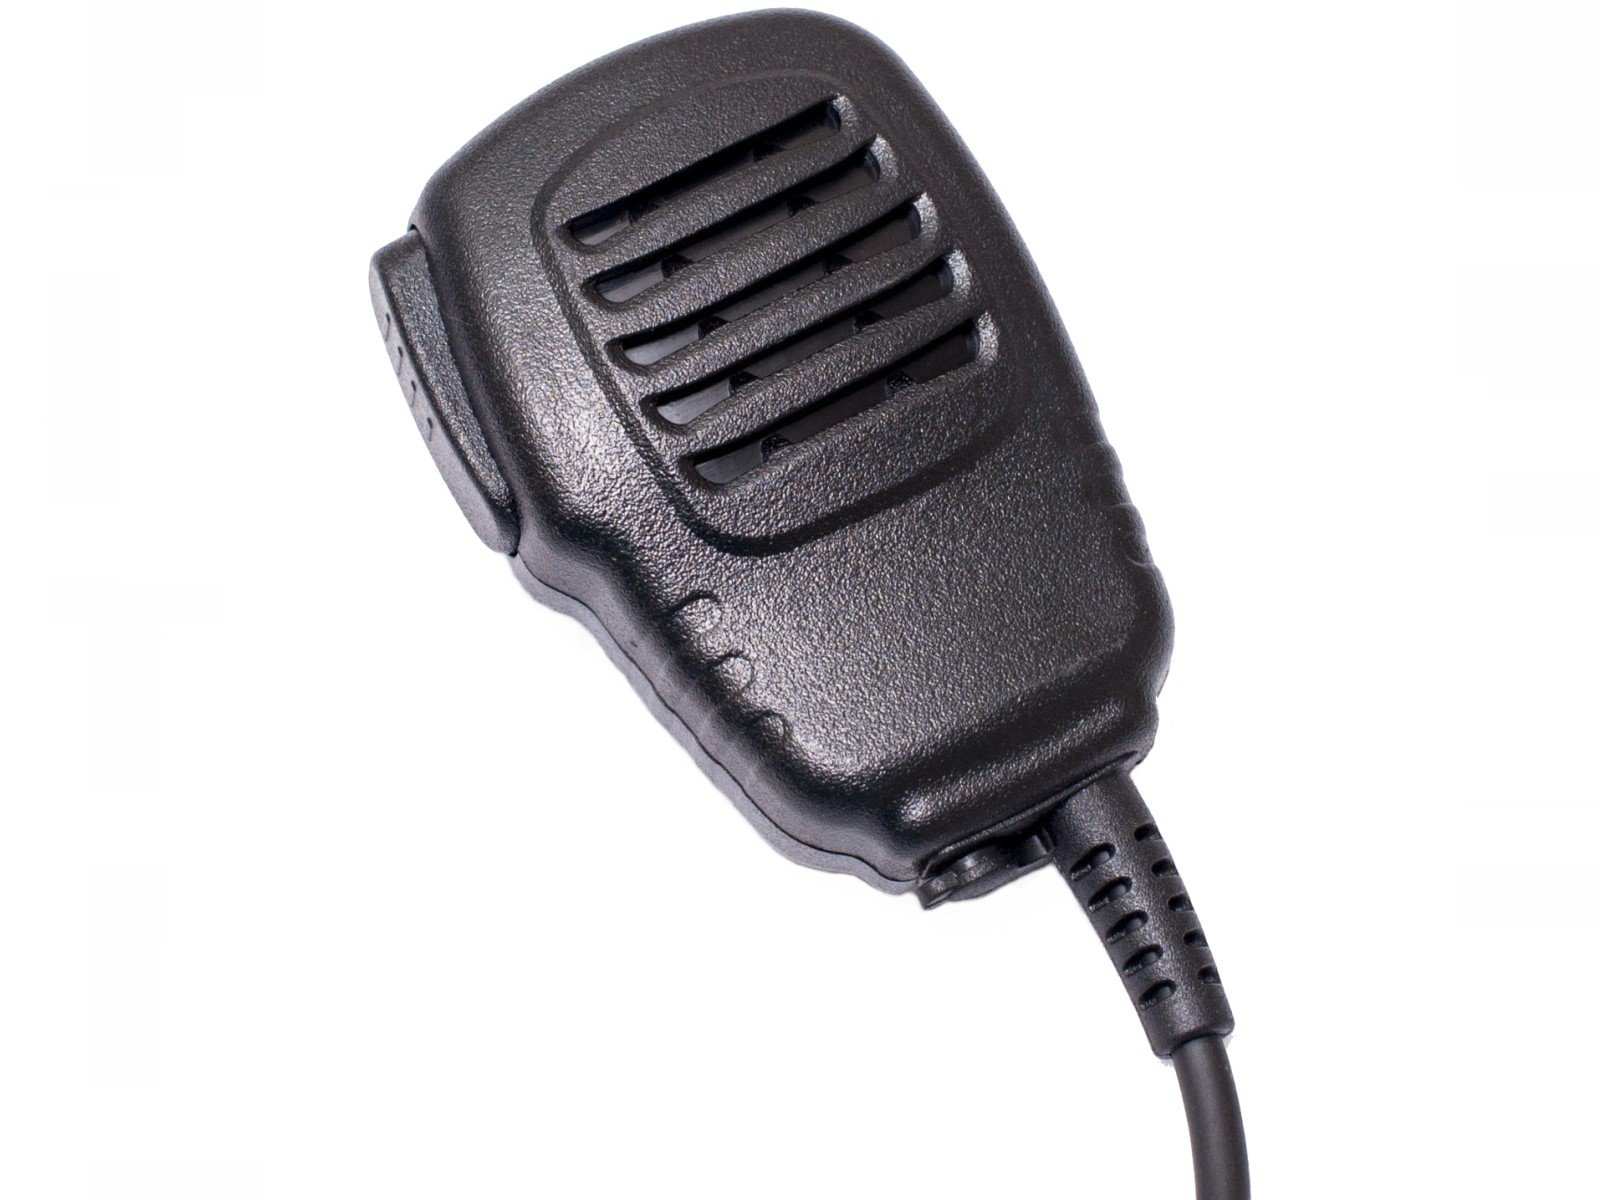 Lautsprechermikrofon leicht HM150-MT